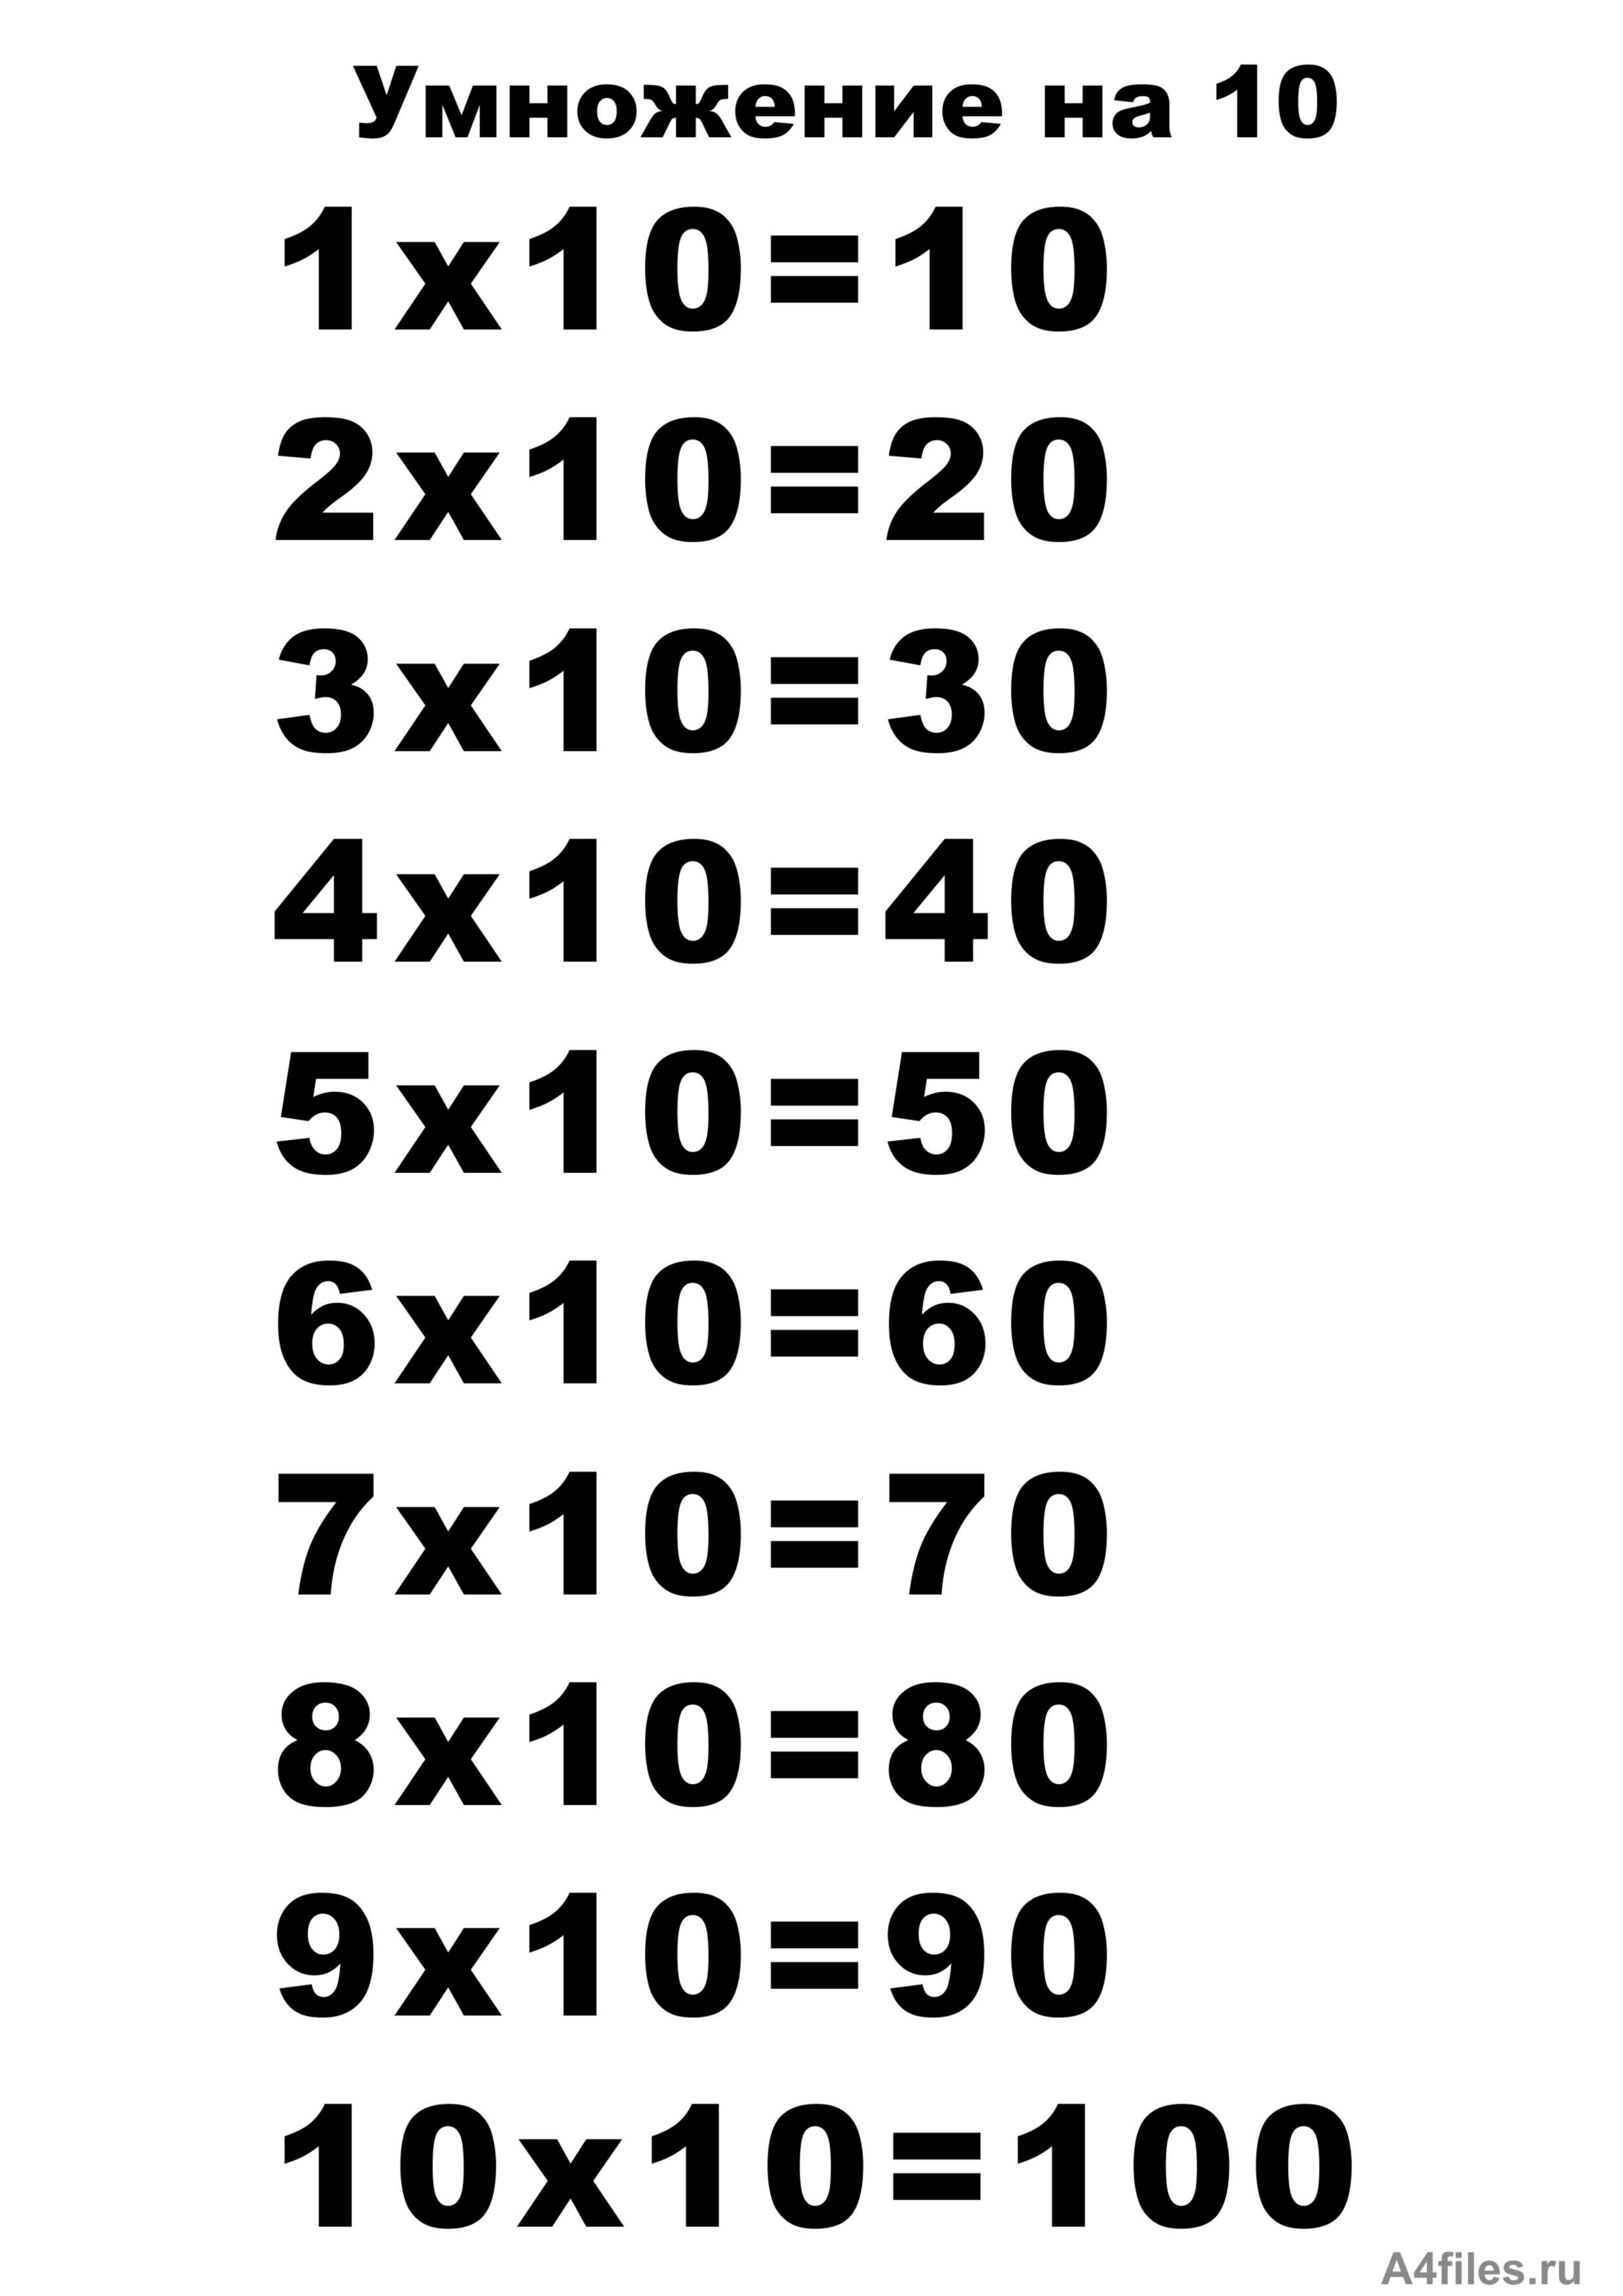 48 умножить на 10. Таблицв умнажения на "10. Таблица умножения на 10 распечатать а4 Формат. Таблица на 10. Т͇а͇б͇л͇и͇ц͇а͇ У͇М͇Н͇О͇Ж͇Е͇Н͇И͇Й͇.